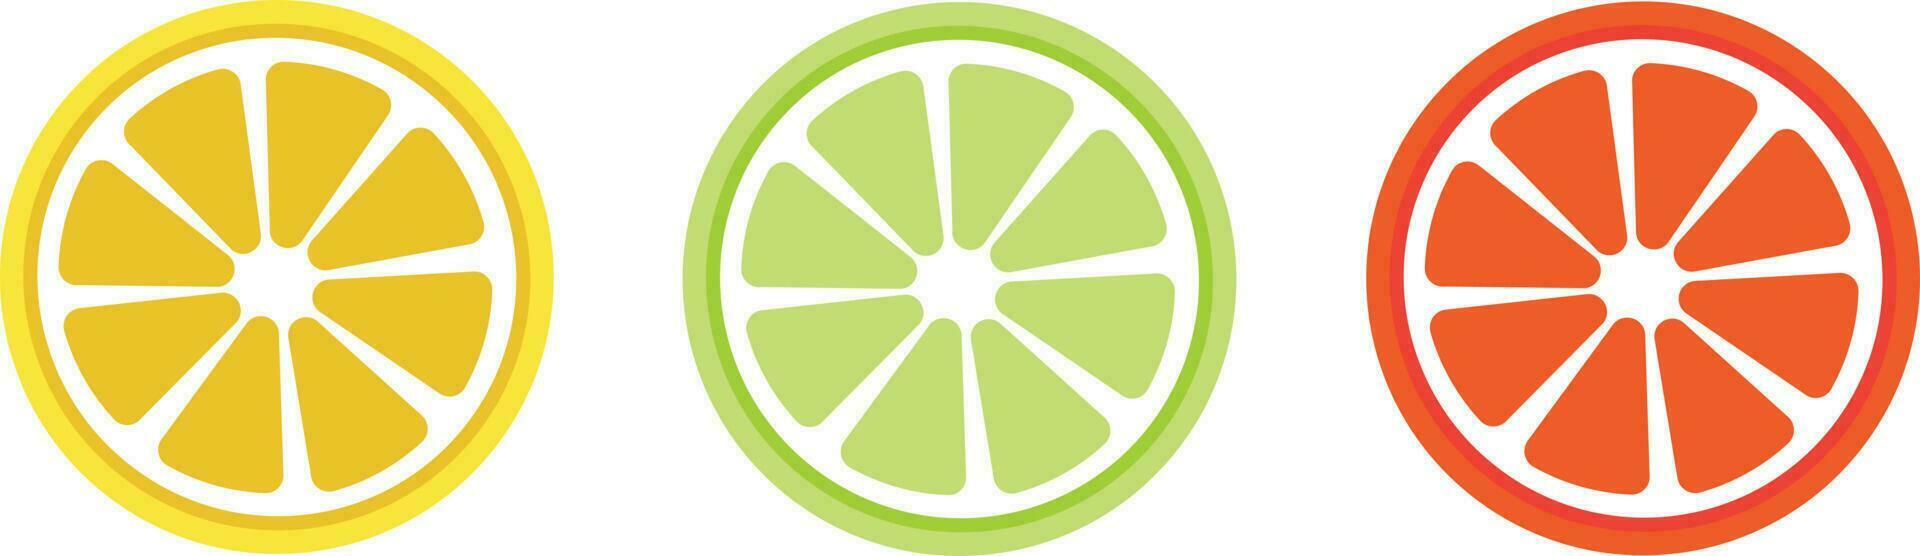 citrus schijfje set. schijfje citroen. sinaasappel schijfje. schijfje limoen. vector illustratie